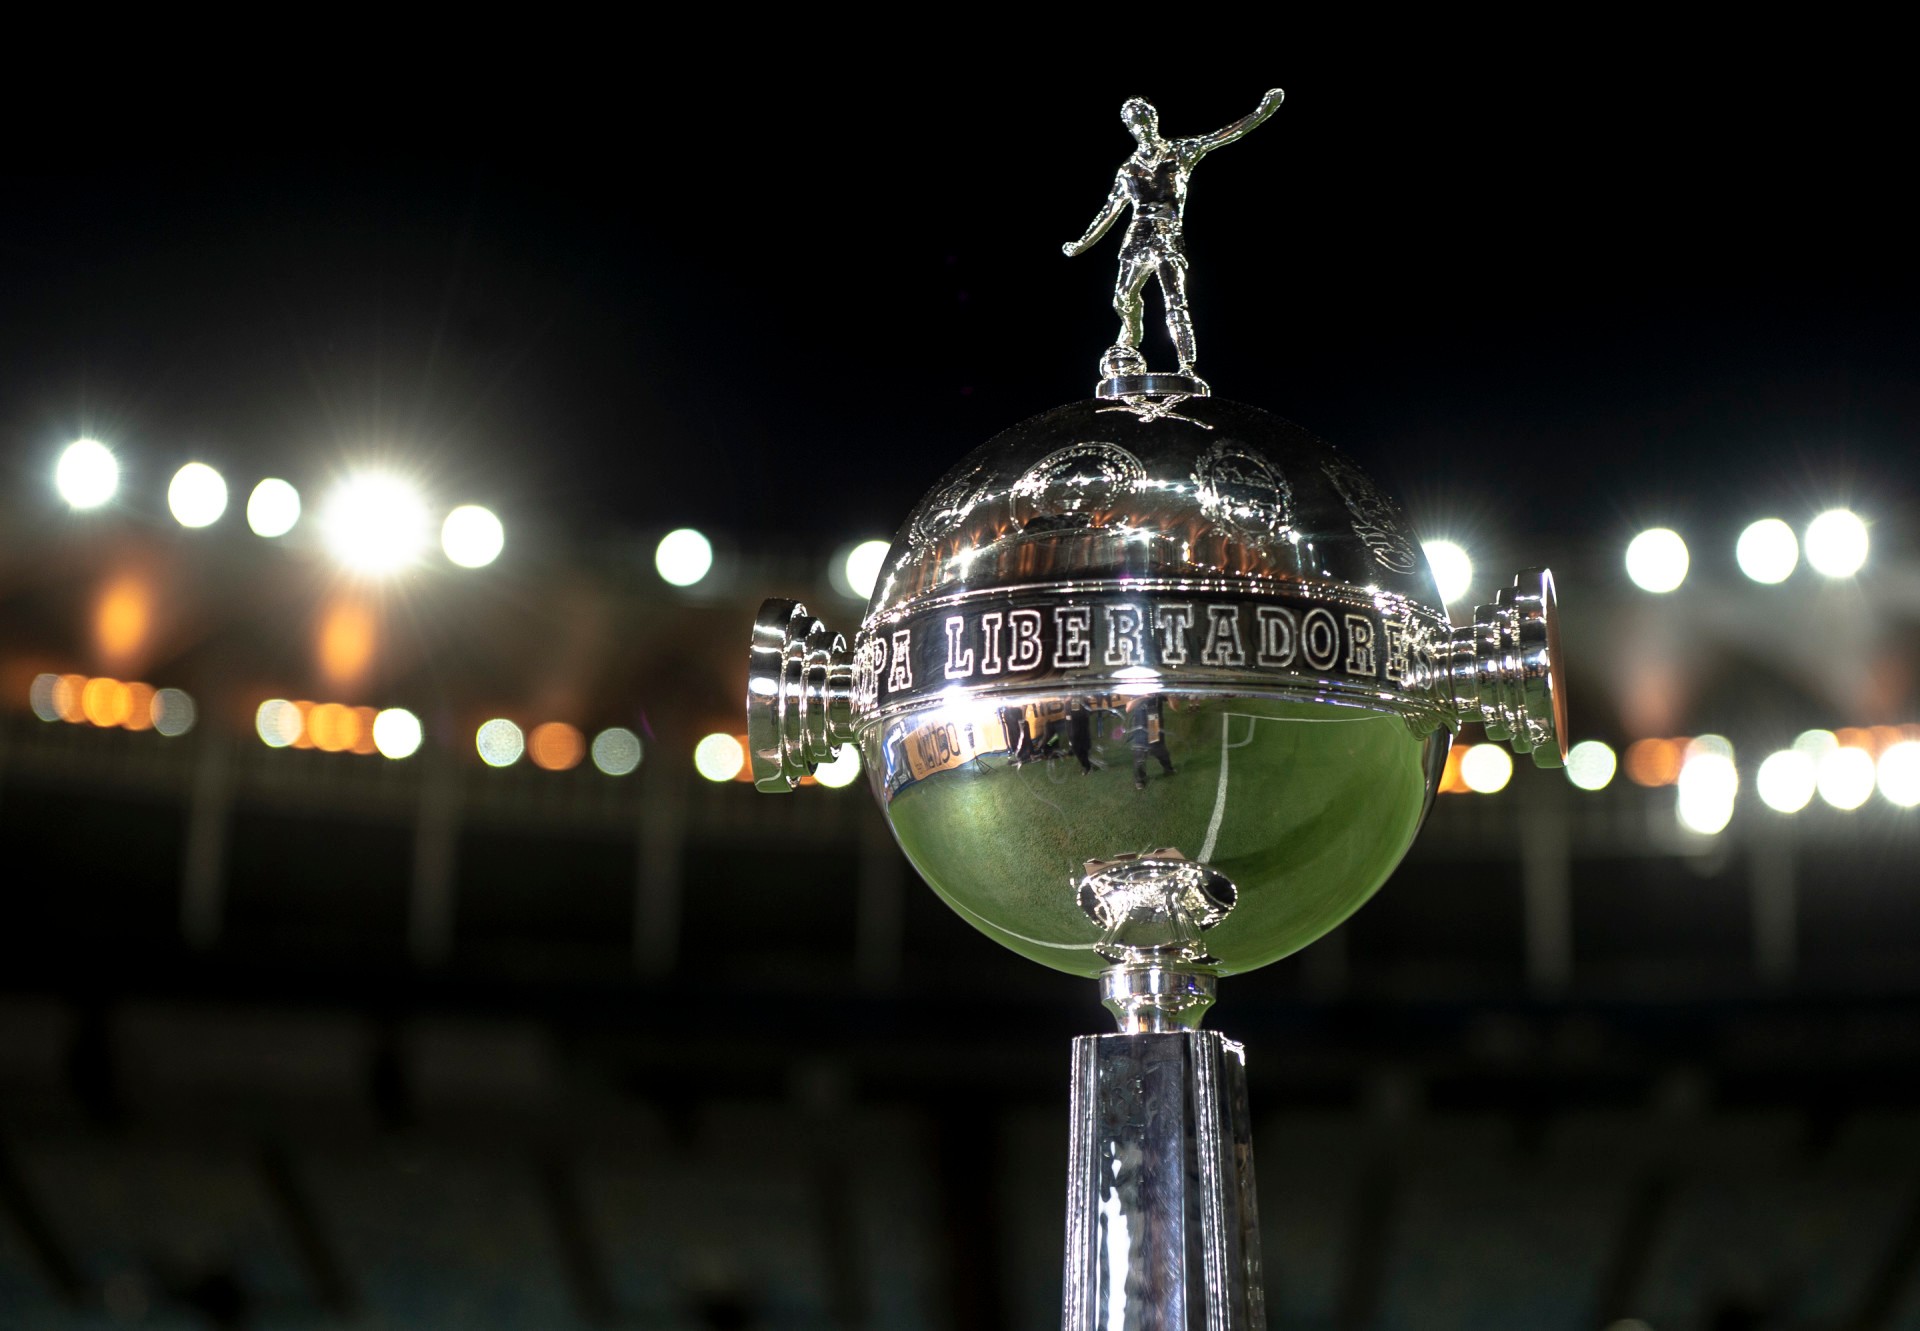 Semana de Libertadores: confira os jogos da terceira rodada e onde ver